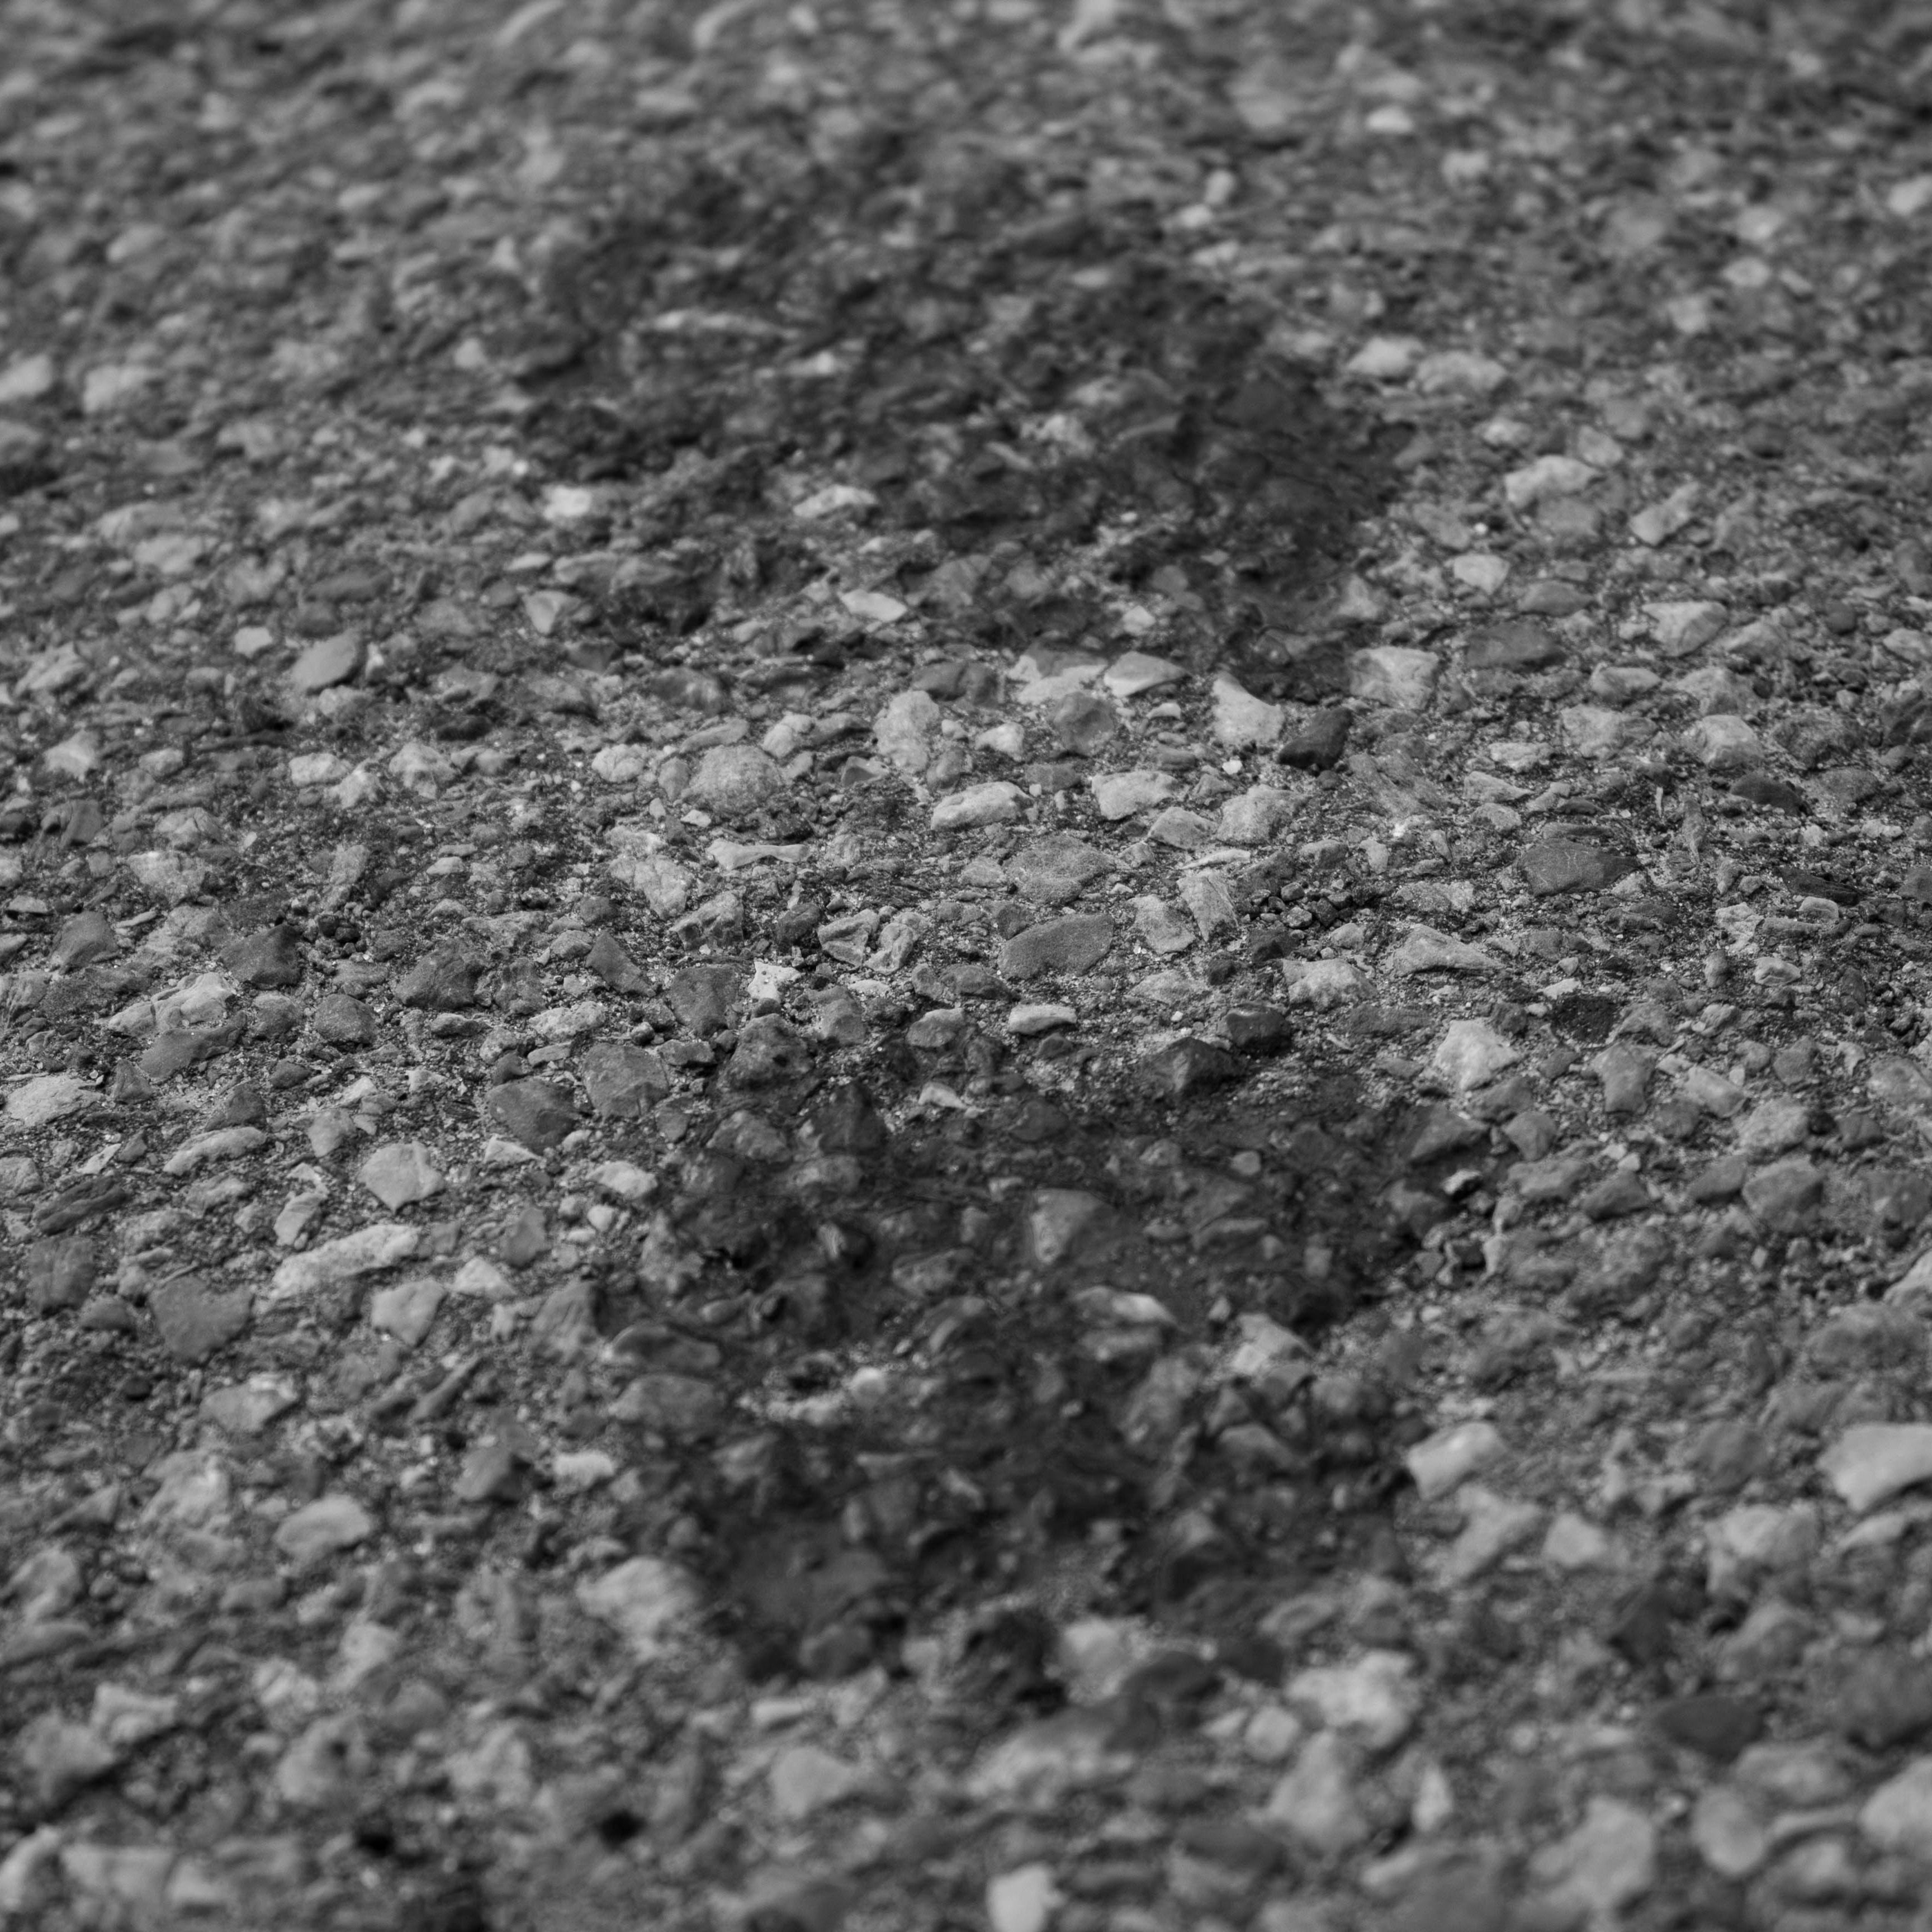 close up of a wet footprint